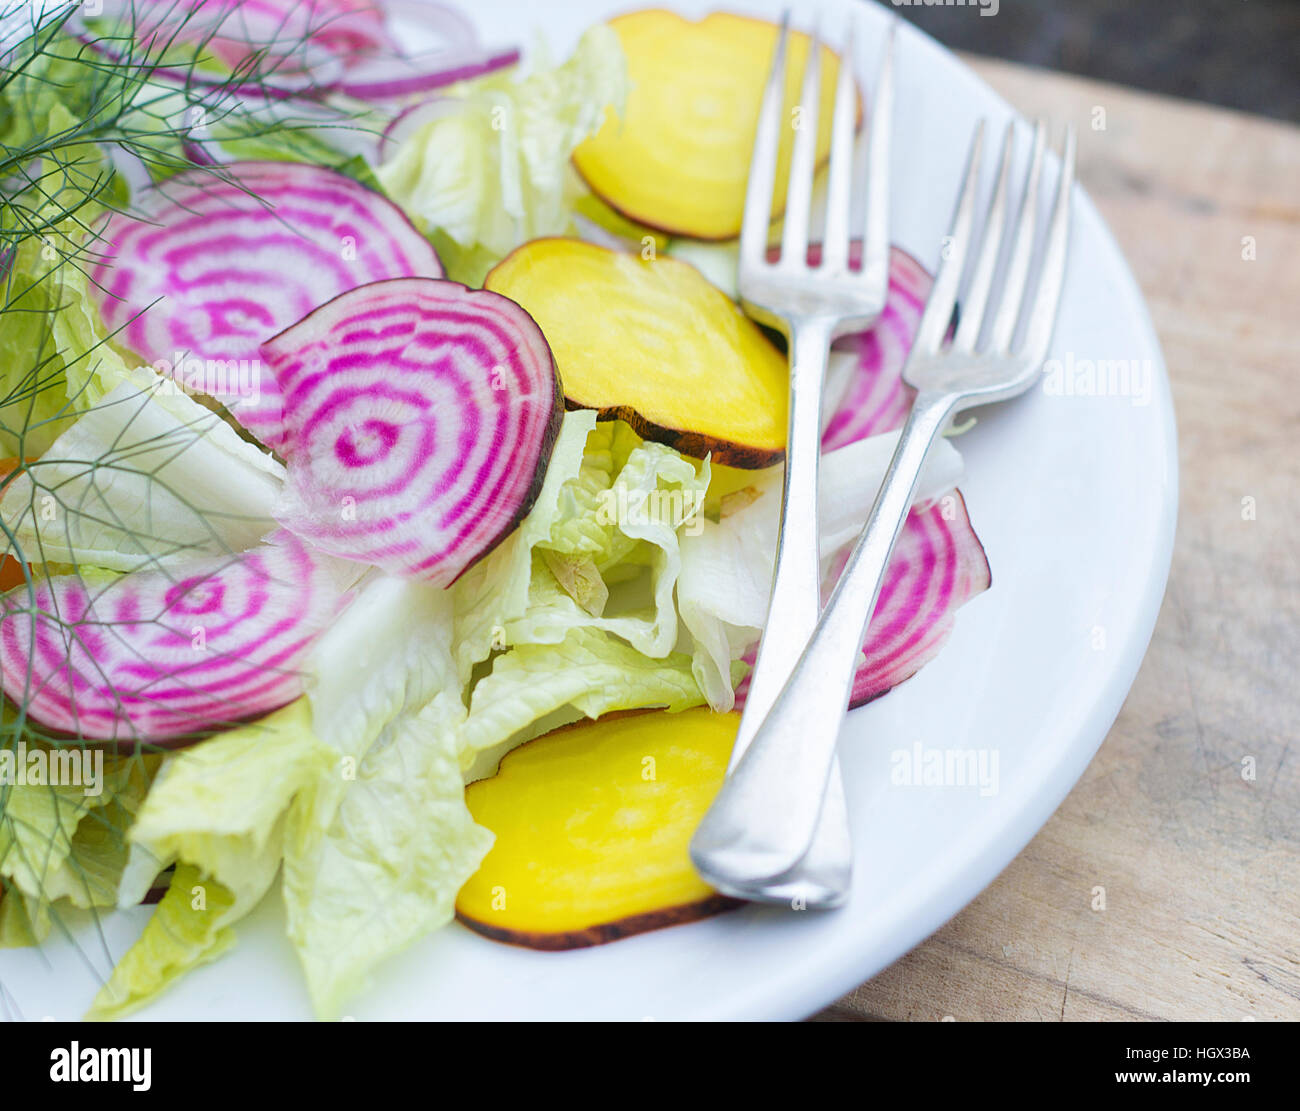 Salade de betterave jaune et pourpre avec des couverts sur plaque blanche, planche de bois. Banque D'Images